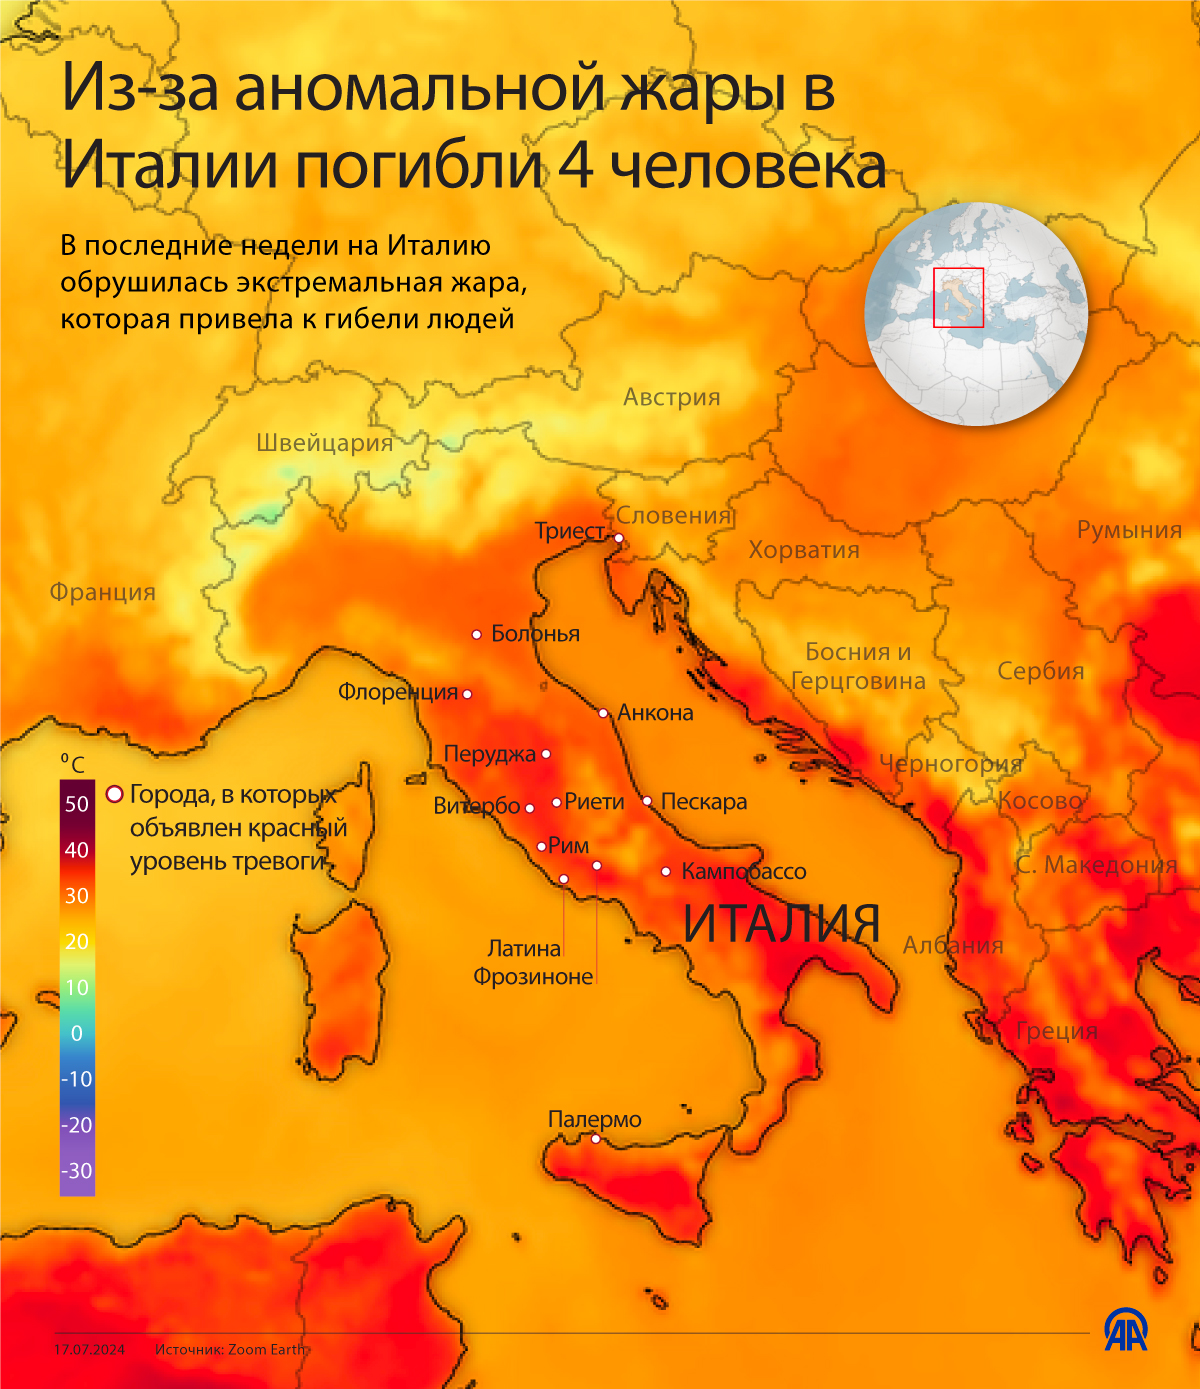 Из-за аномальной жары в Италии погибли 4 человека